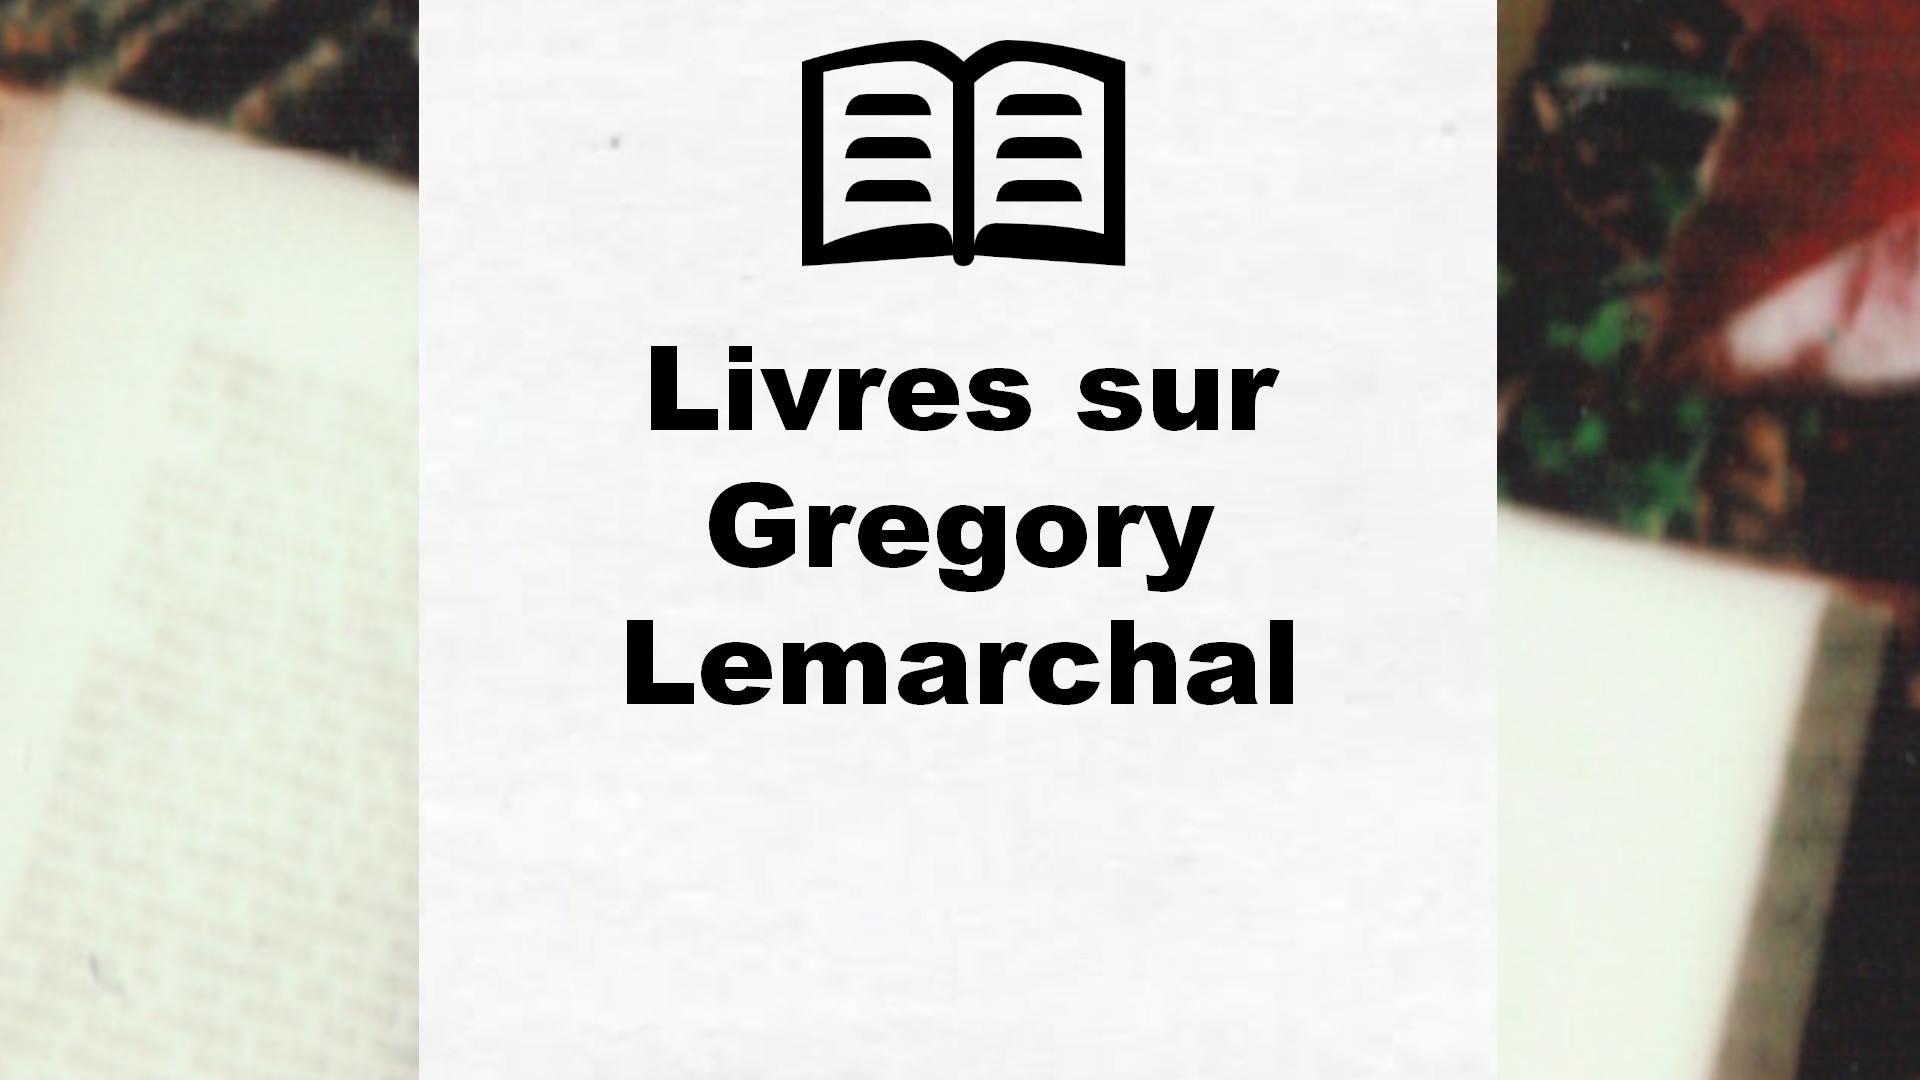 Livres sur Gregory Lemarchal